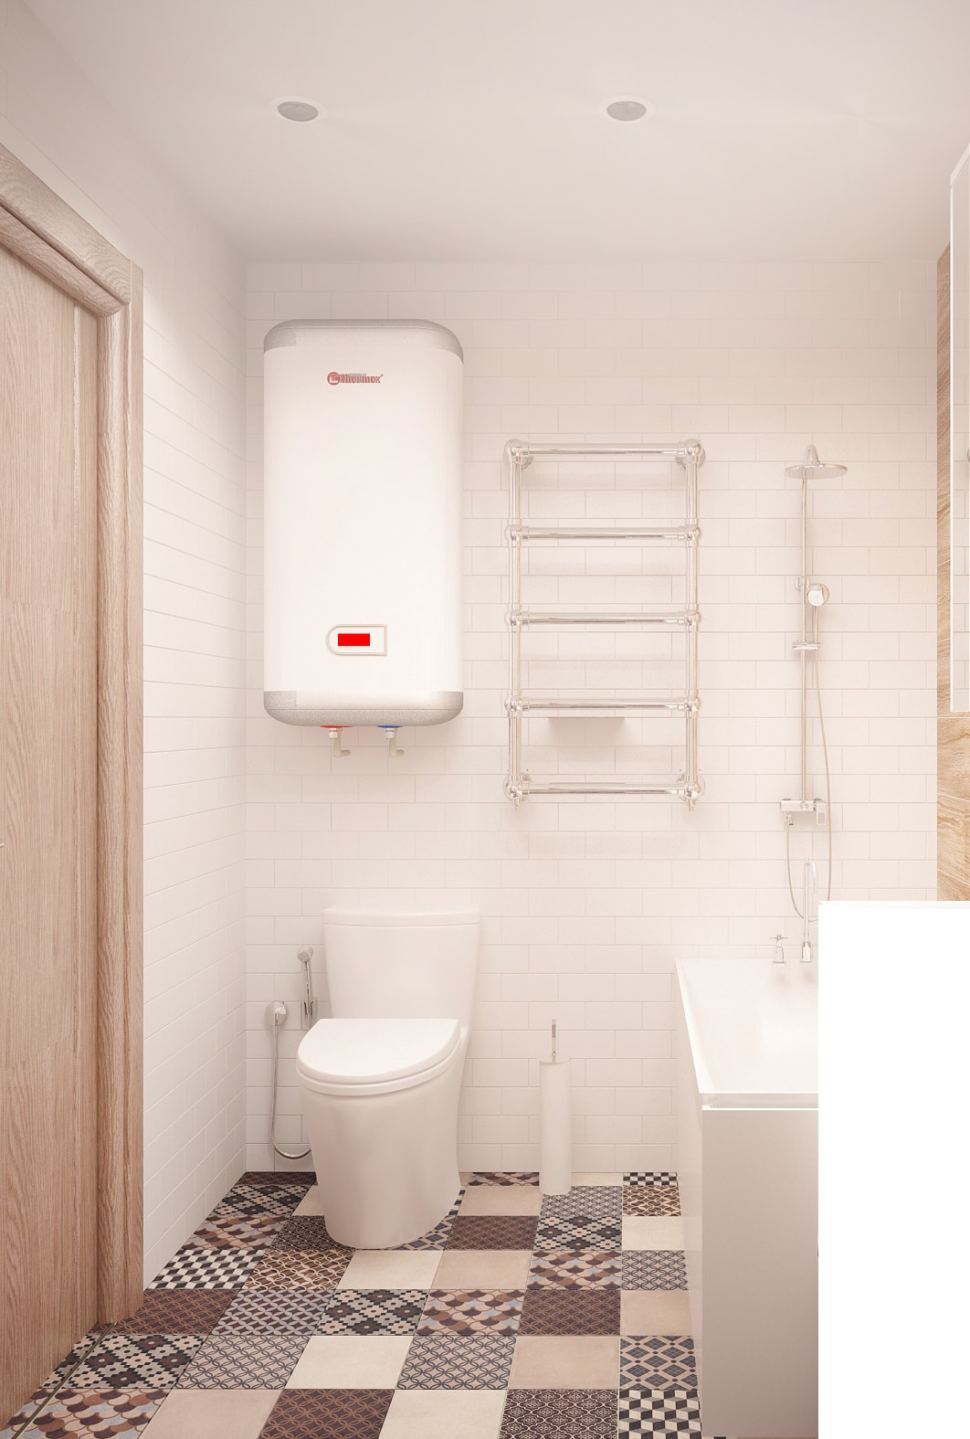 Дизайн-проект ванной комнаты 3 кв.м в бежевых оттенках, керамическая плитка, орнамент, полотенцесушитель, смеситель, стиральная машина, бойлер